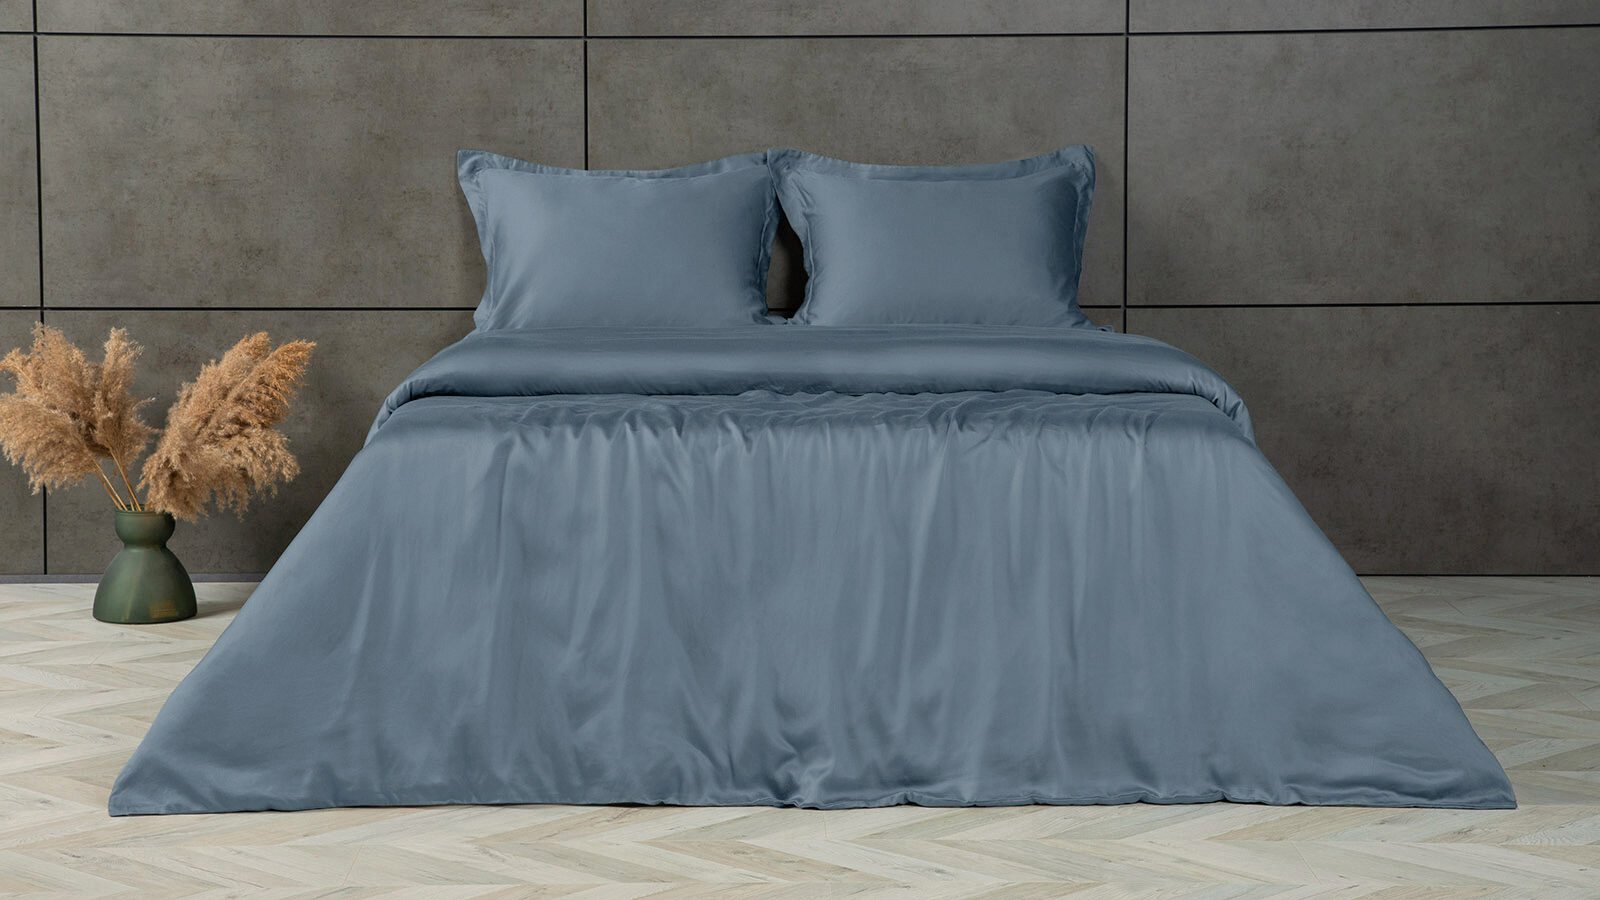 Комплект постельного белья Solid Tencel, цвет Синий металлик комплект белья lapin rose selina синий